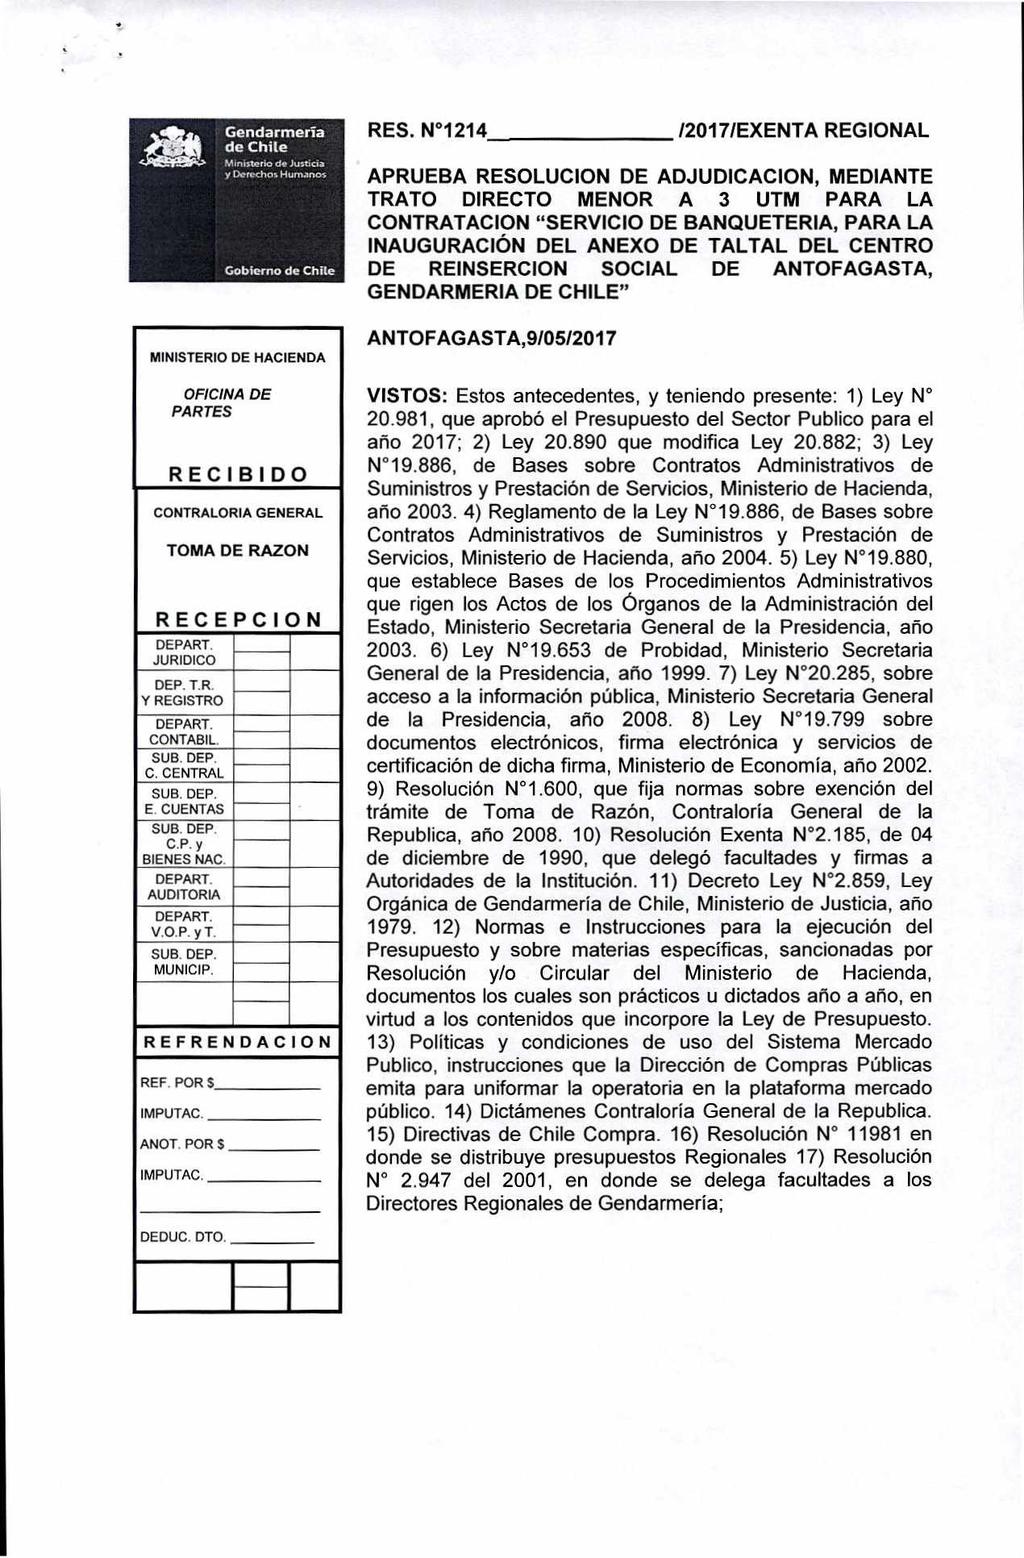 Nº Expediente: 303322/2017 Nº Documento: 1214 Fecha: 09/05/2017 Gendarmería de Chite Ministerio a, Justicia y Derecho, Humanos Gobierno de Chile RES.